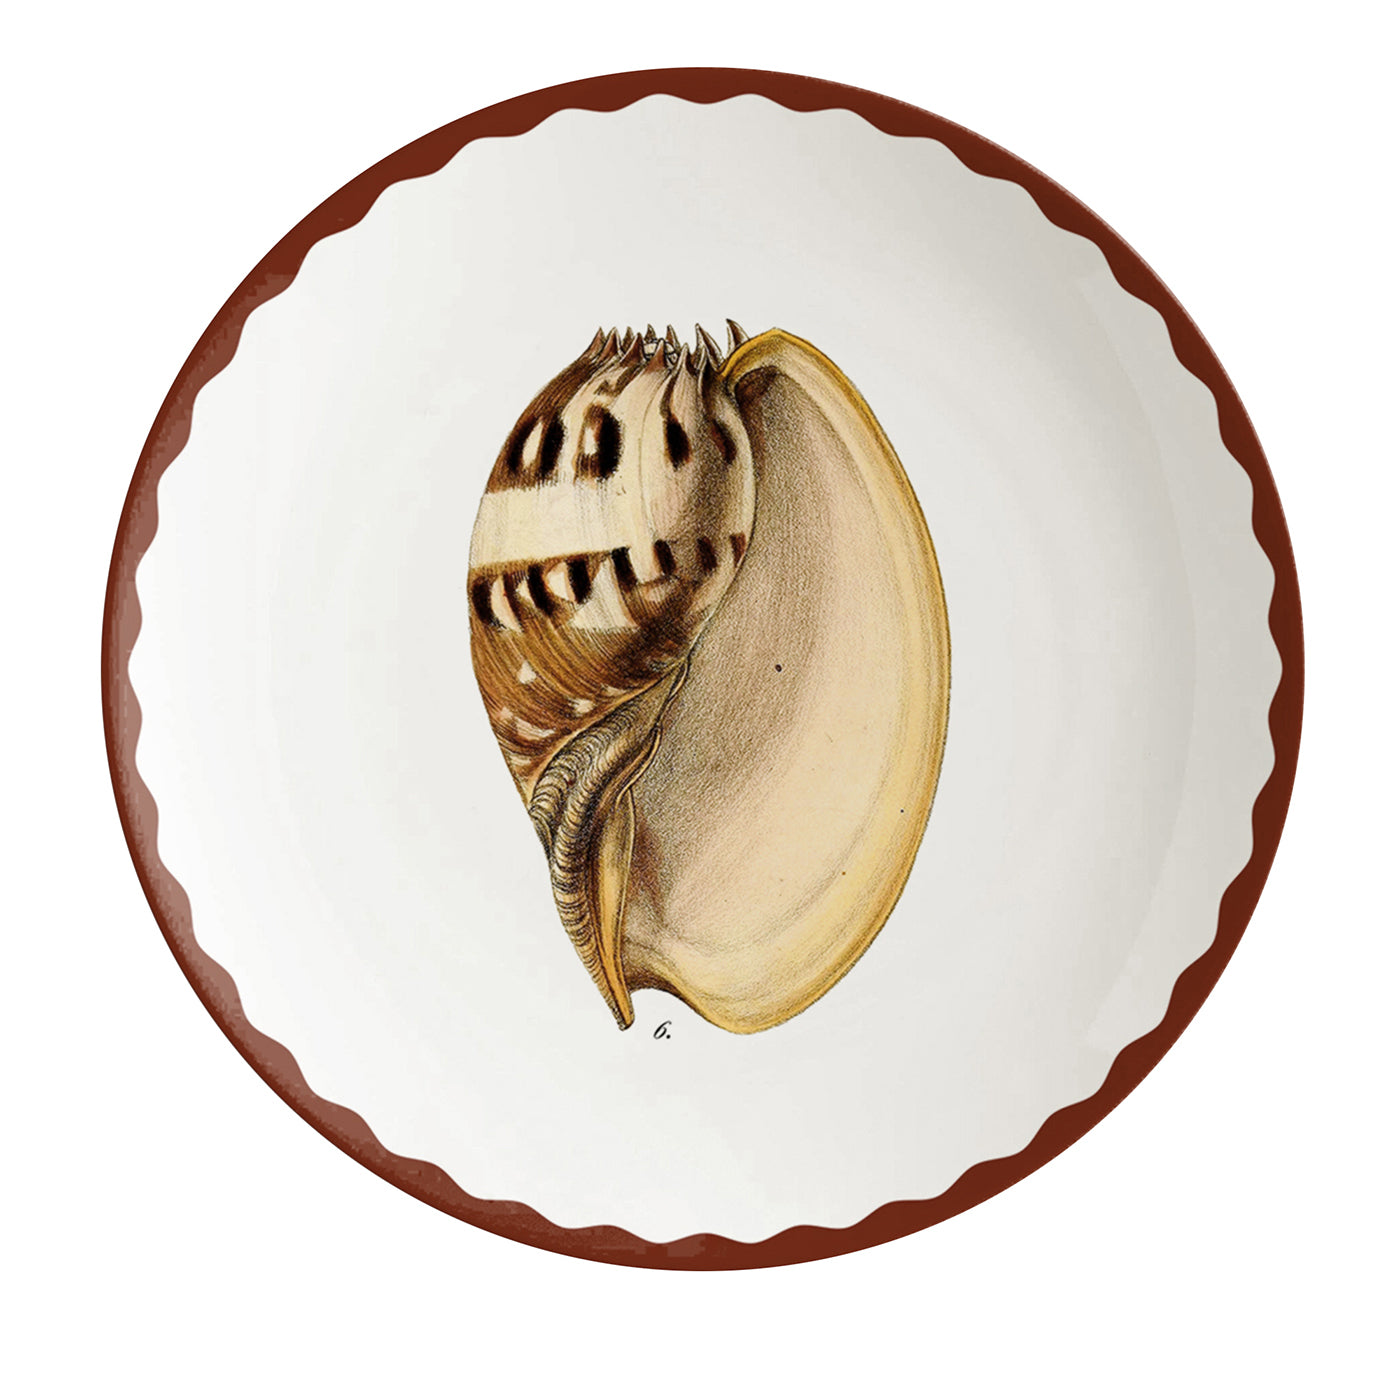 Cabinet De Curiosités Set Of 2 Porcelain Bread Plates With Shells - Main view